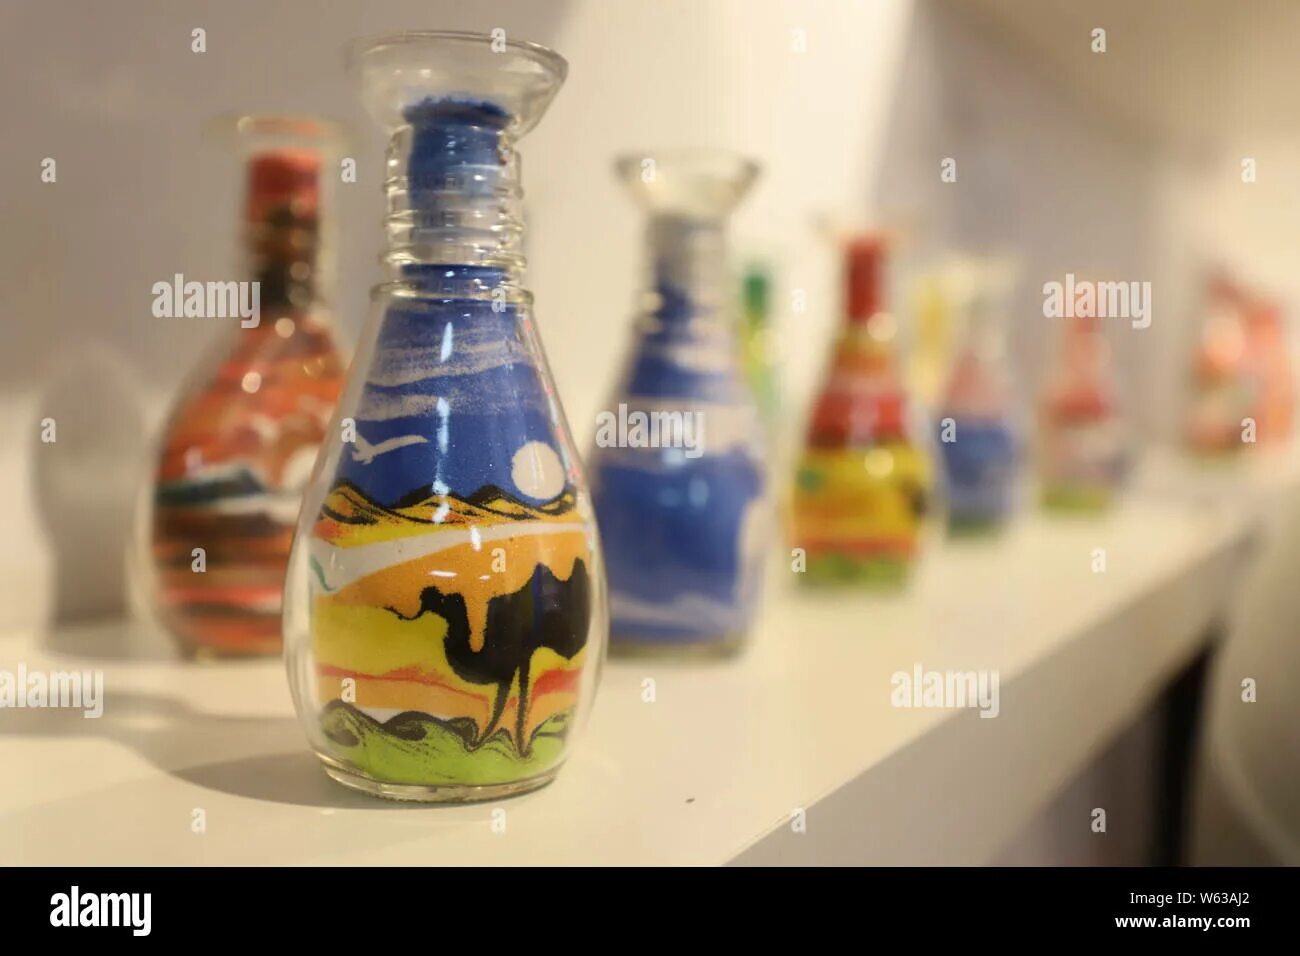 Glass made from sand. Композиции из цветного песка в стеклянных бутылках. Декоративные бутылочки с цветным песком. Цветной песок в стекле. Стеклянные бутылочки с песком Мальдивы.